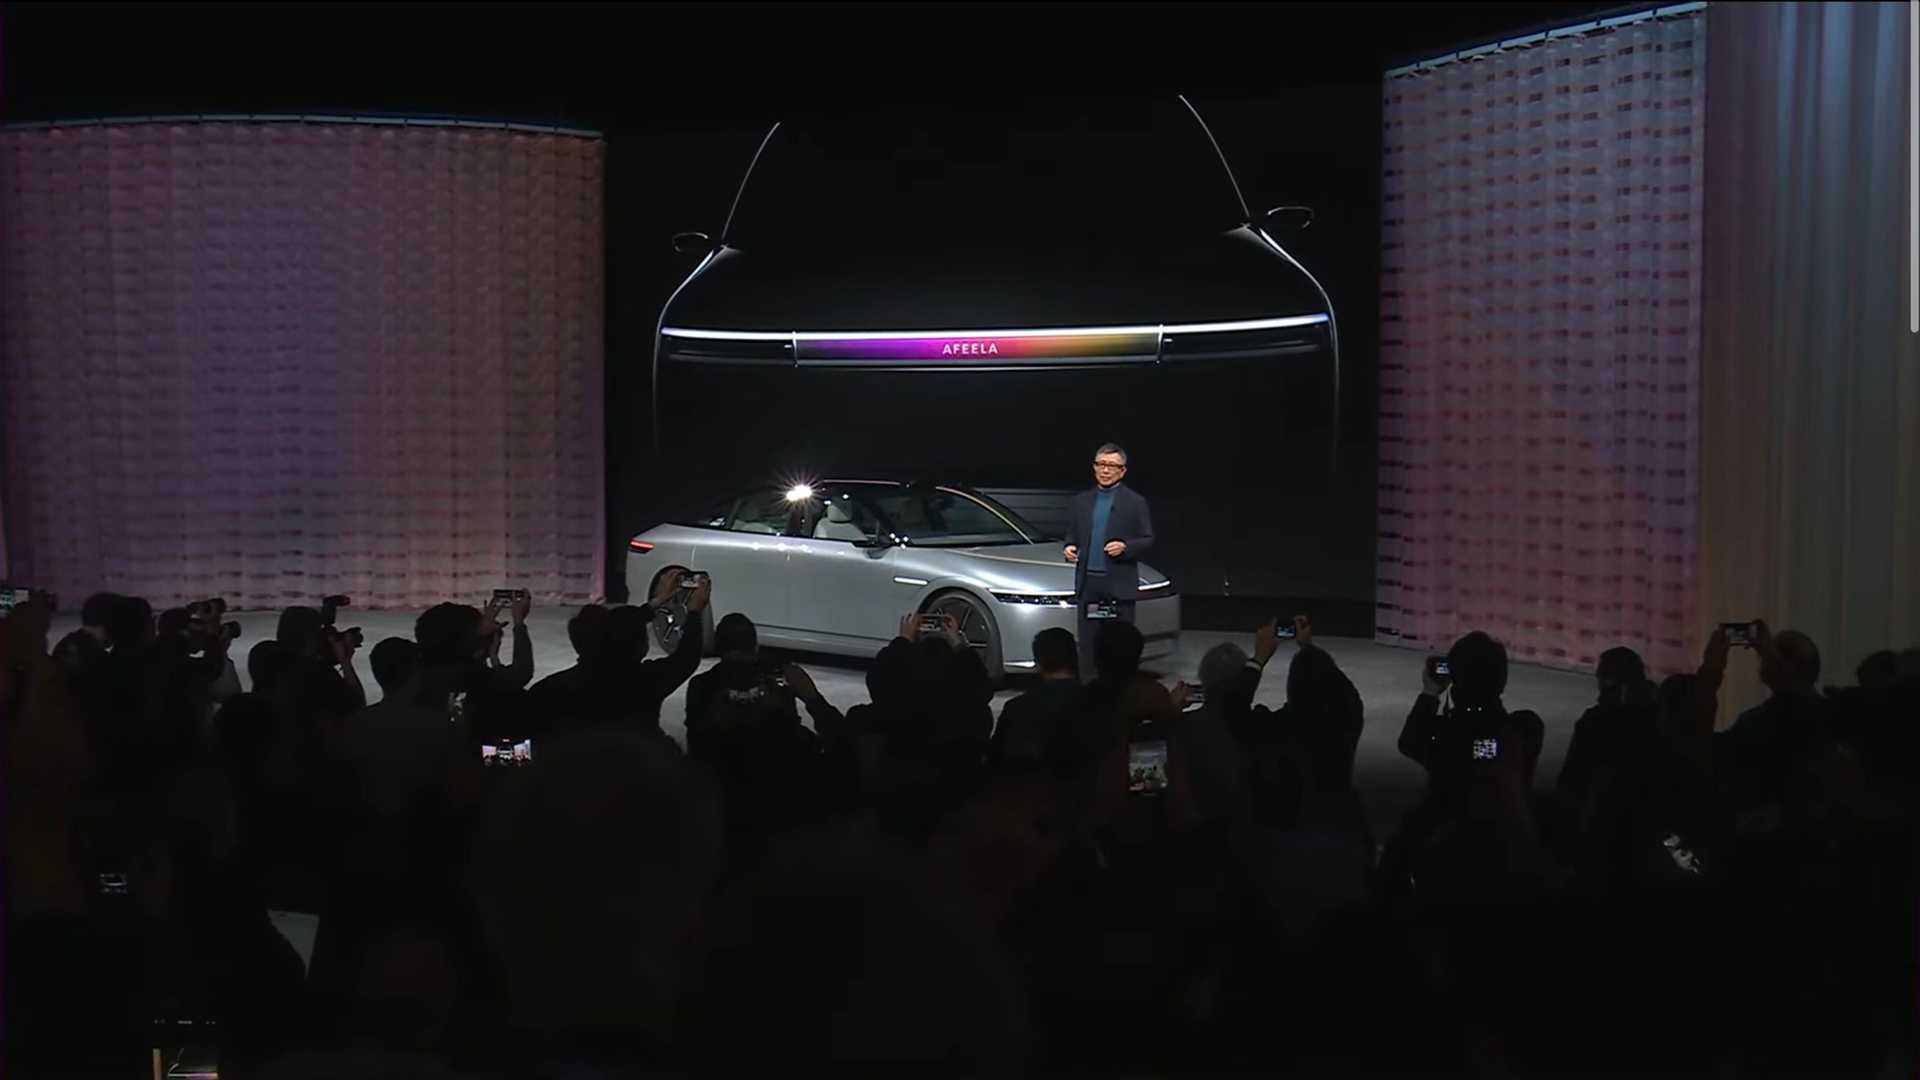 سوني تطلق علامتها التجارية الجديدة للسيارات رسمياً بالتعاون مع هوندا 28